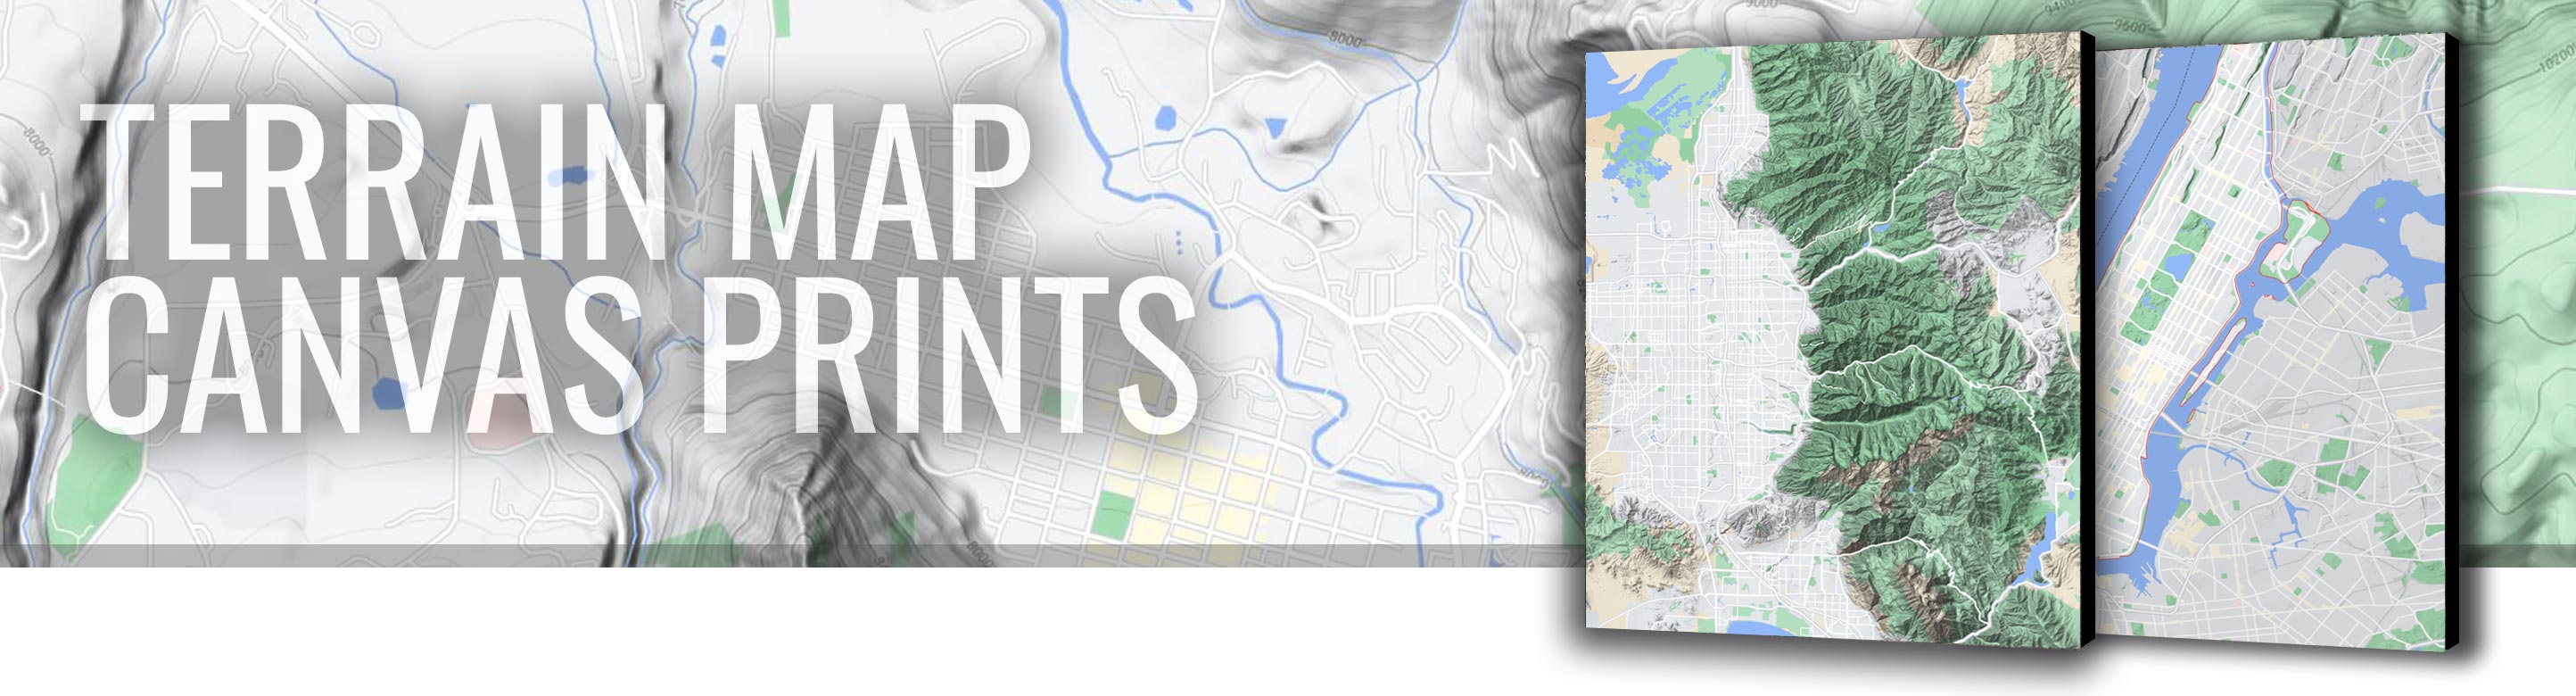 large-canvas-wrap-usgs-terrain-maps-banner